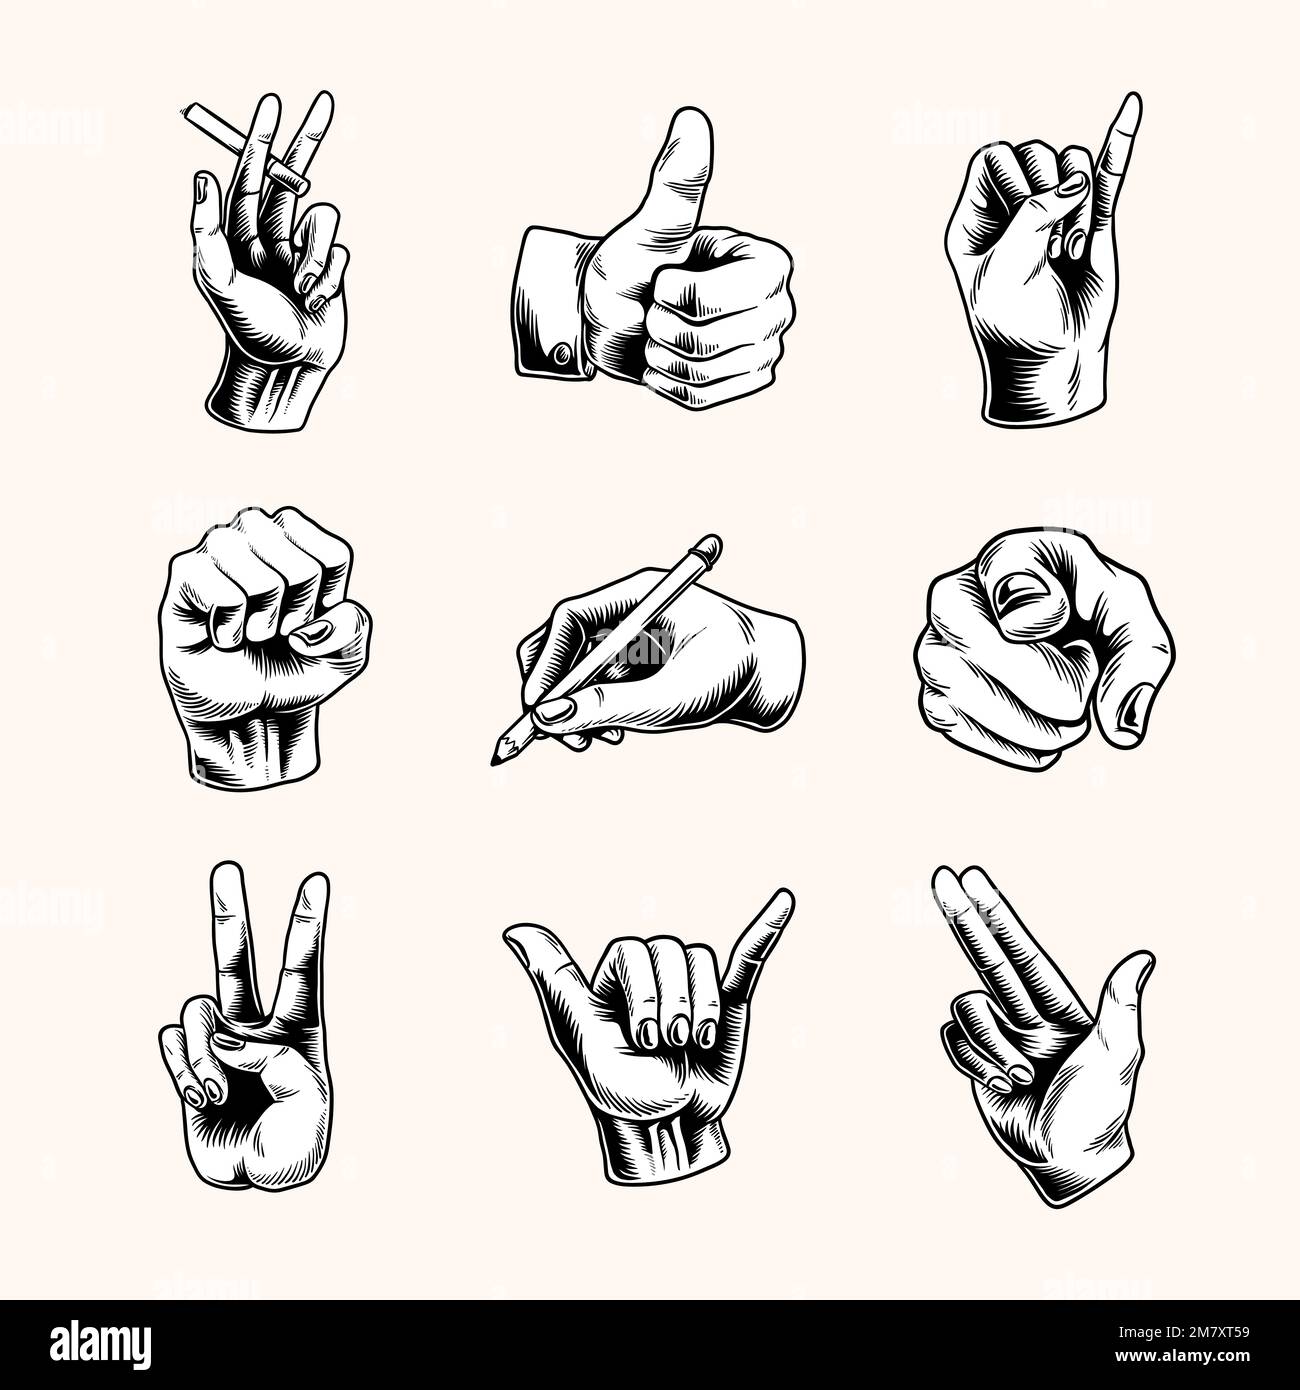 Cool hand gesture symbol set vector Stock Vector